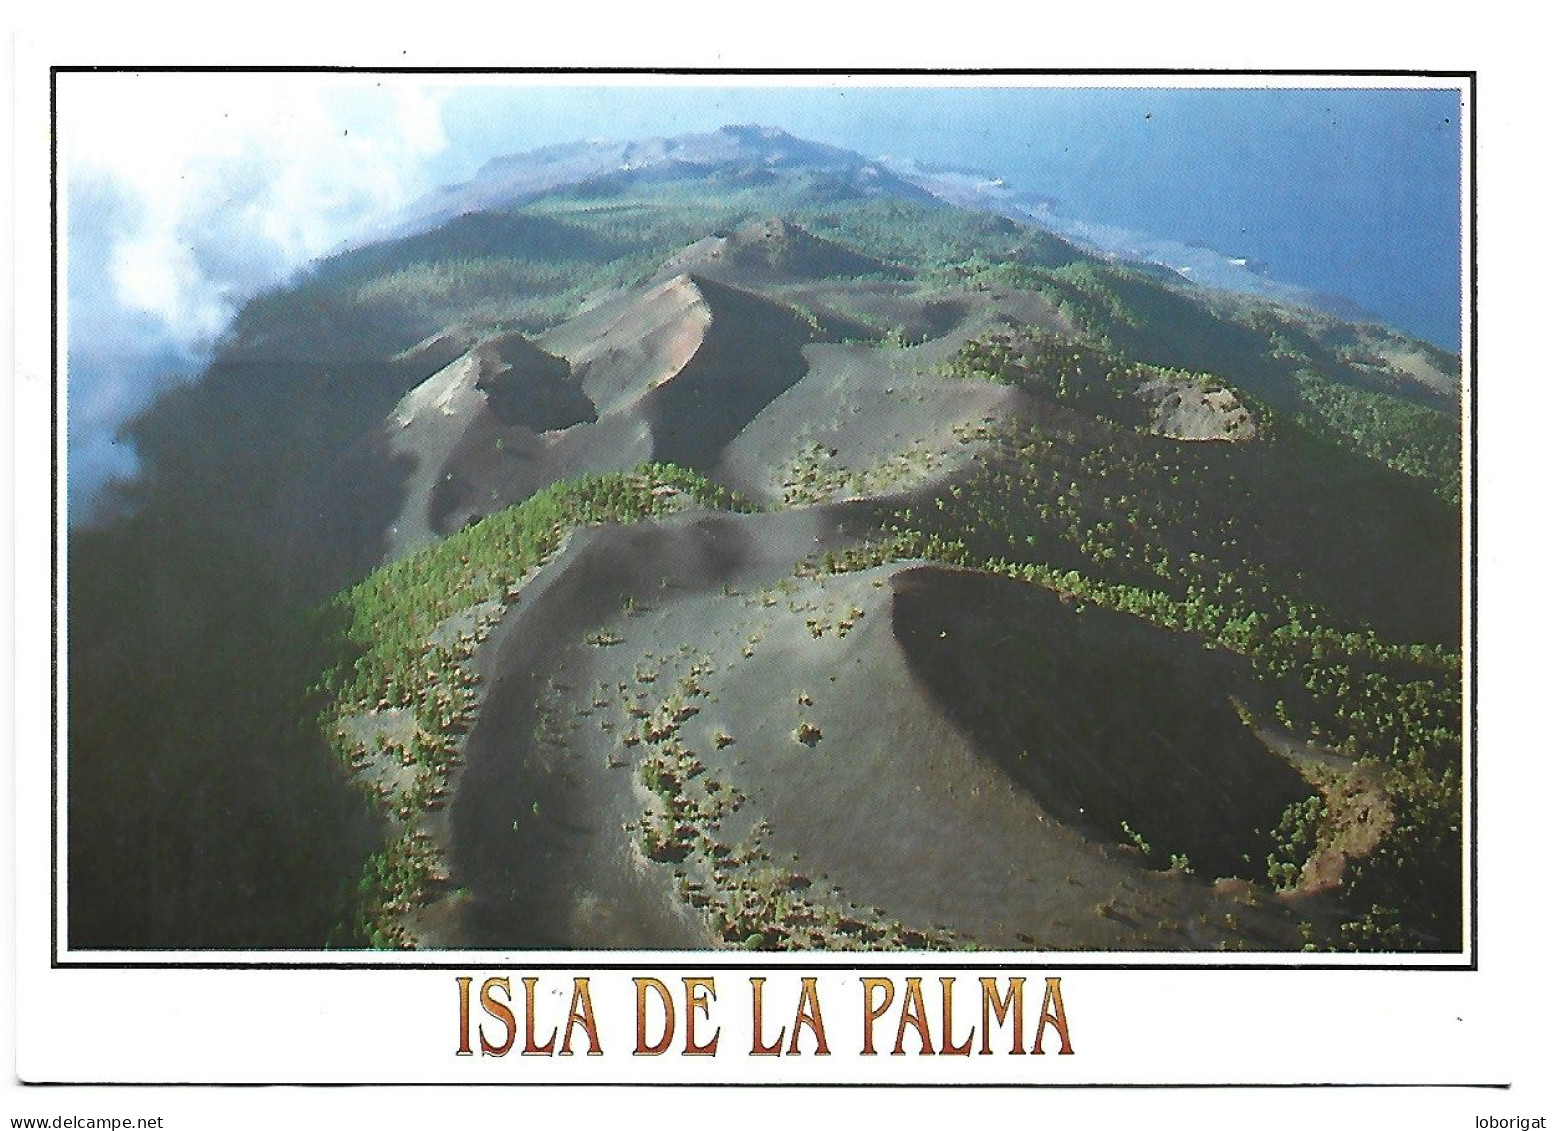 VISTA AEREA, RUTA DE LOS VOLCANES.- ISLA DE LA PALMA / ISLAS CANARIAS.- ( ESPAÑA ) - La Palma